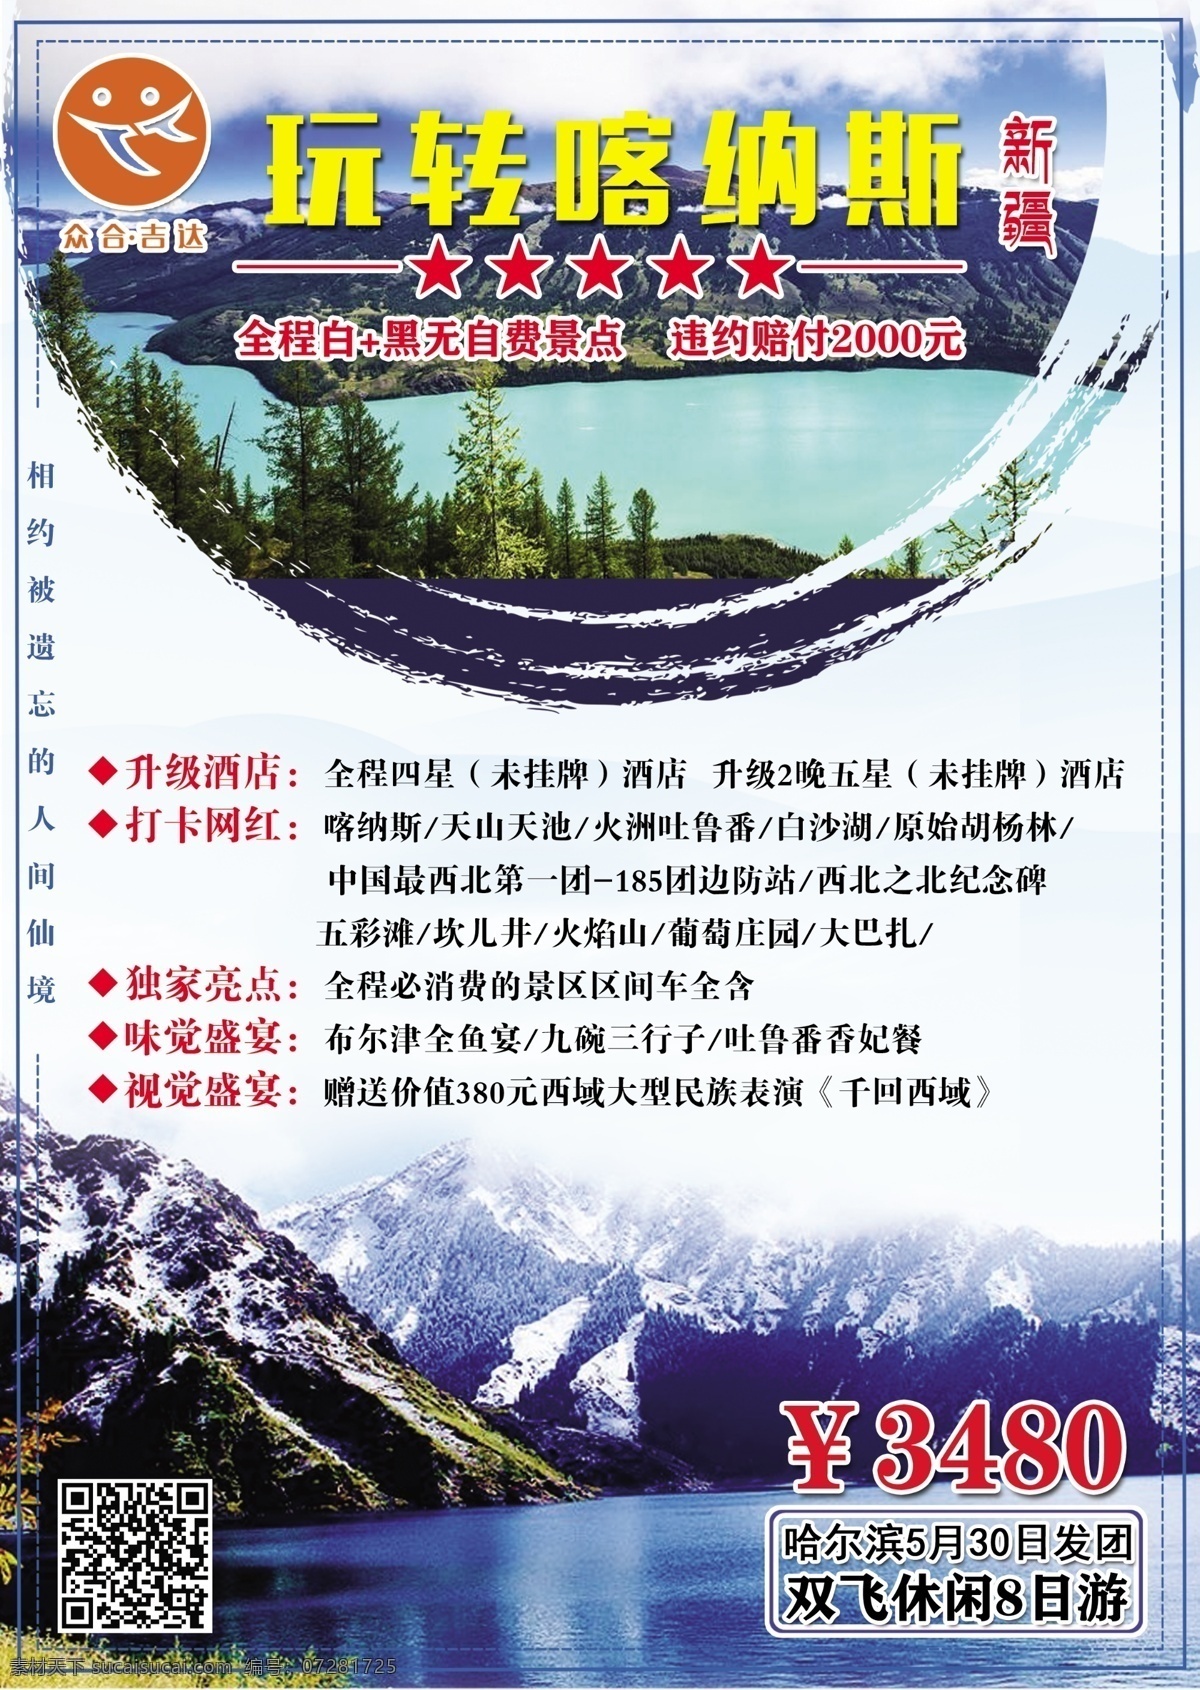 喀 纳斯 旅游 海报 喀纳斯 吉达国旅 宣传 新疆 工作资源